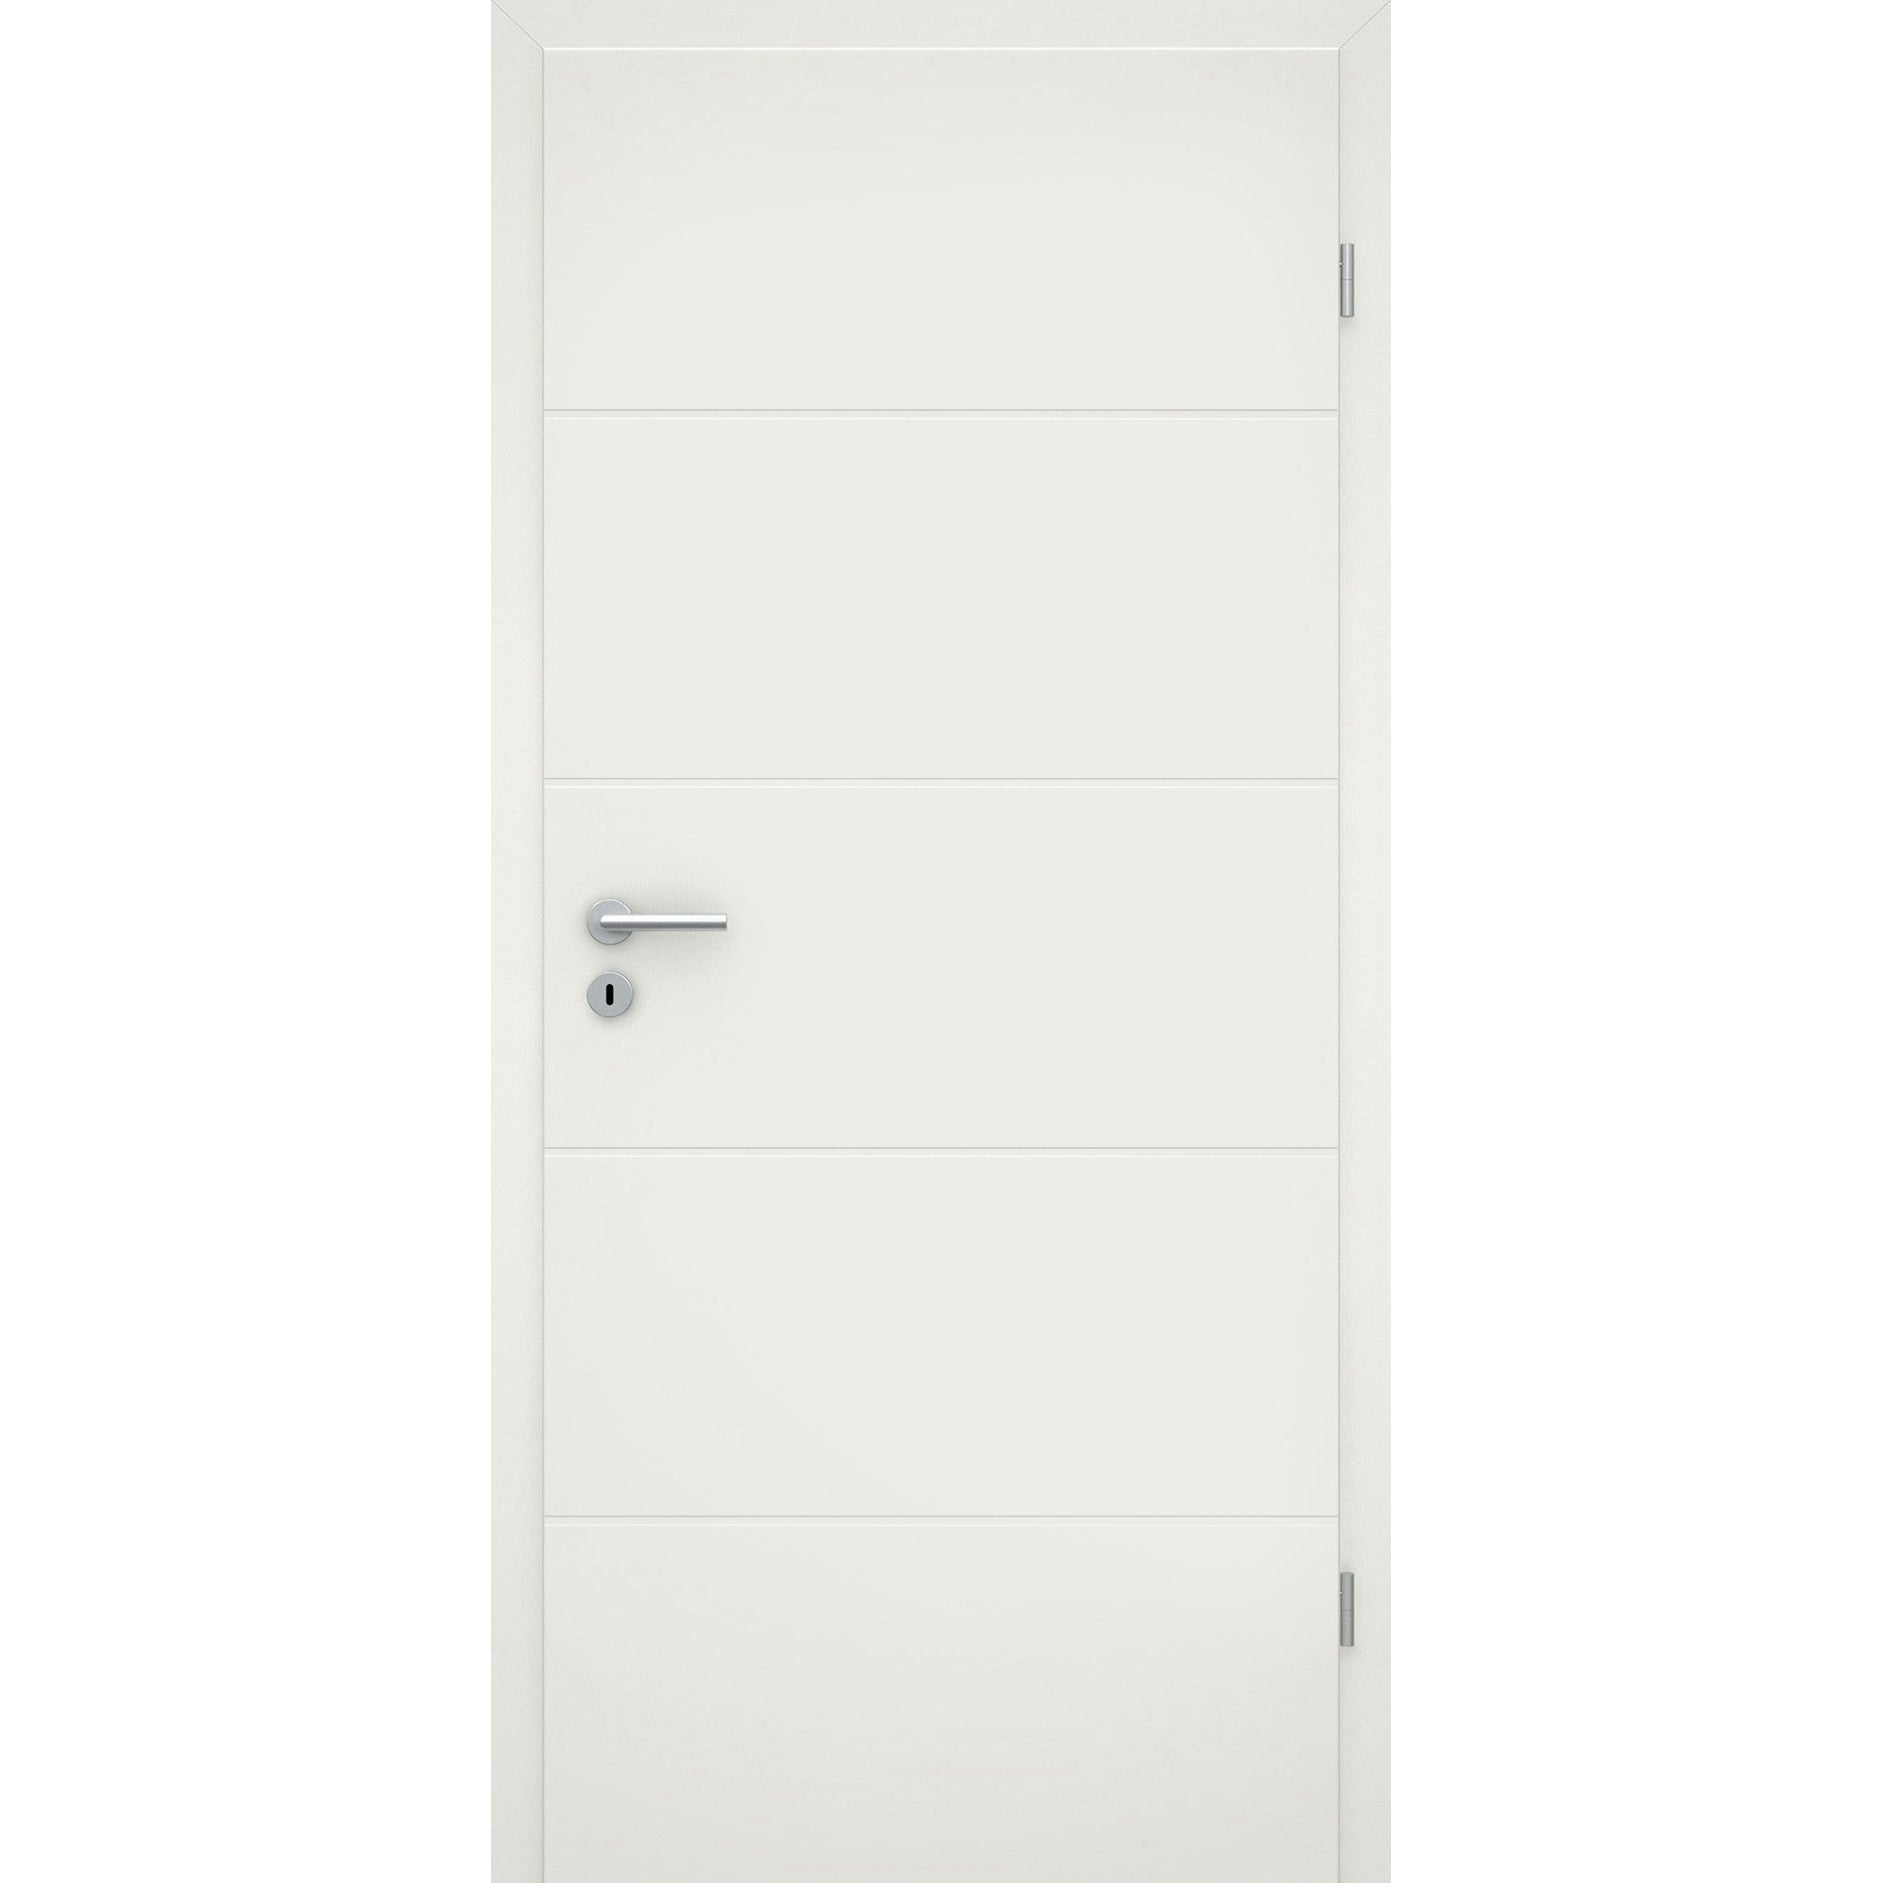 Wohnungseingangstür mit Zarge soft-weiß 4 Rillen Eckkante SK1 / KK3 - Modell Designtür Q41